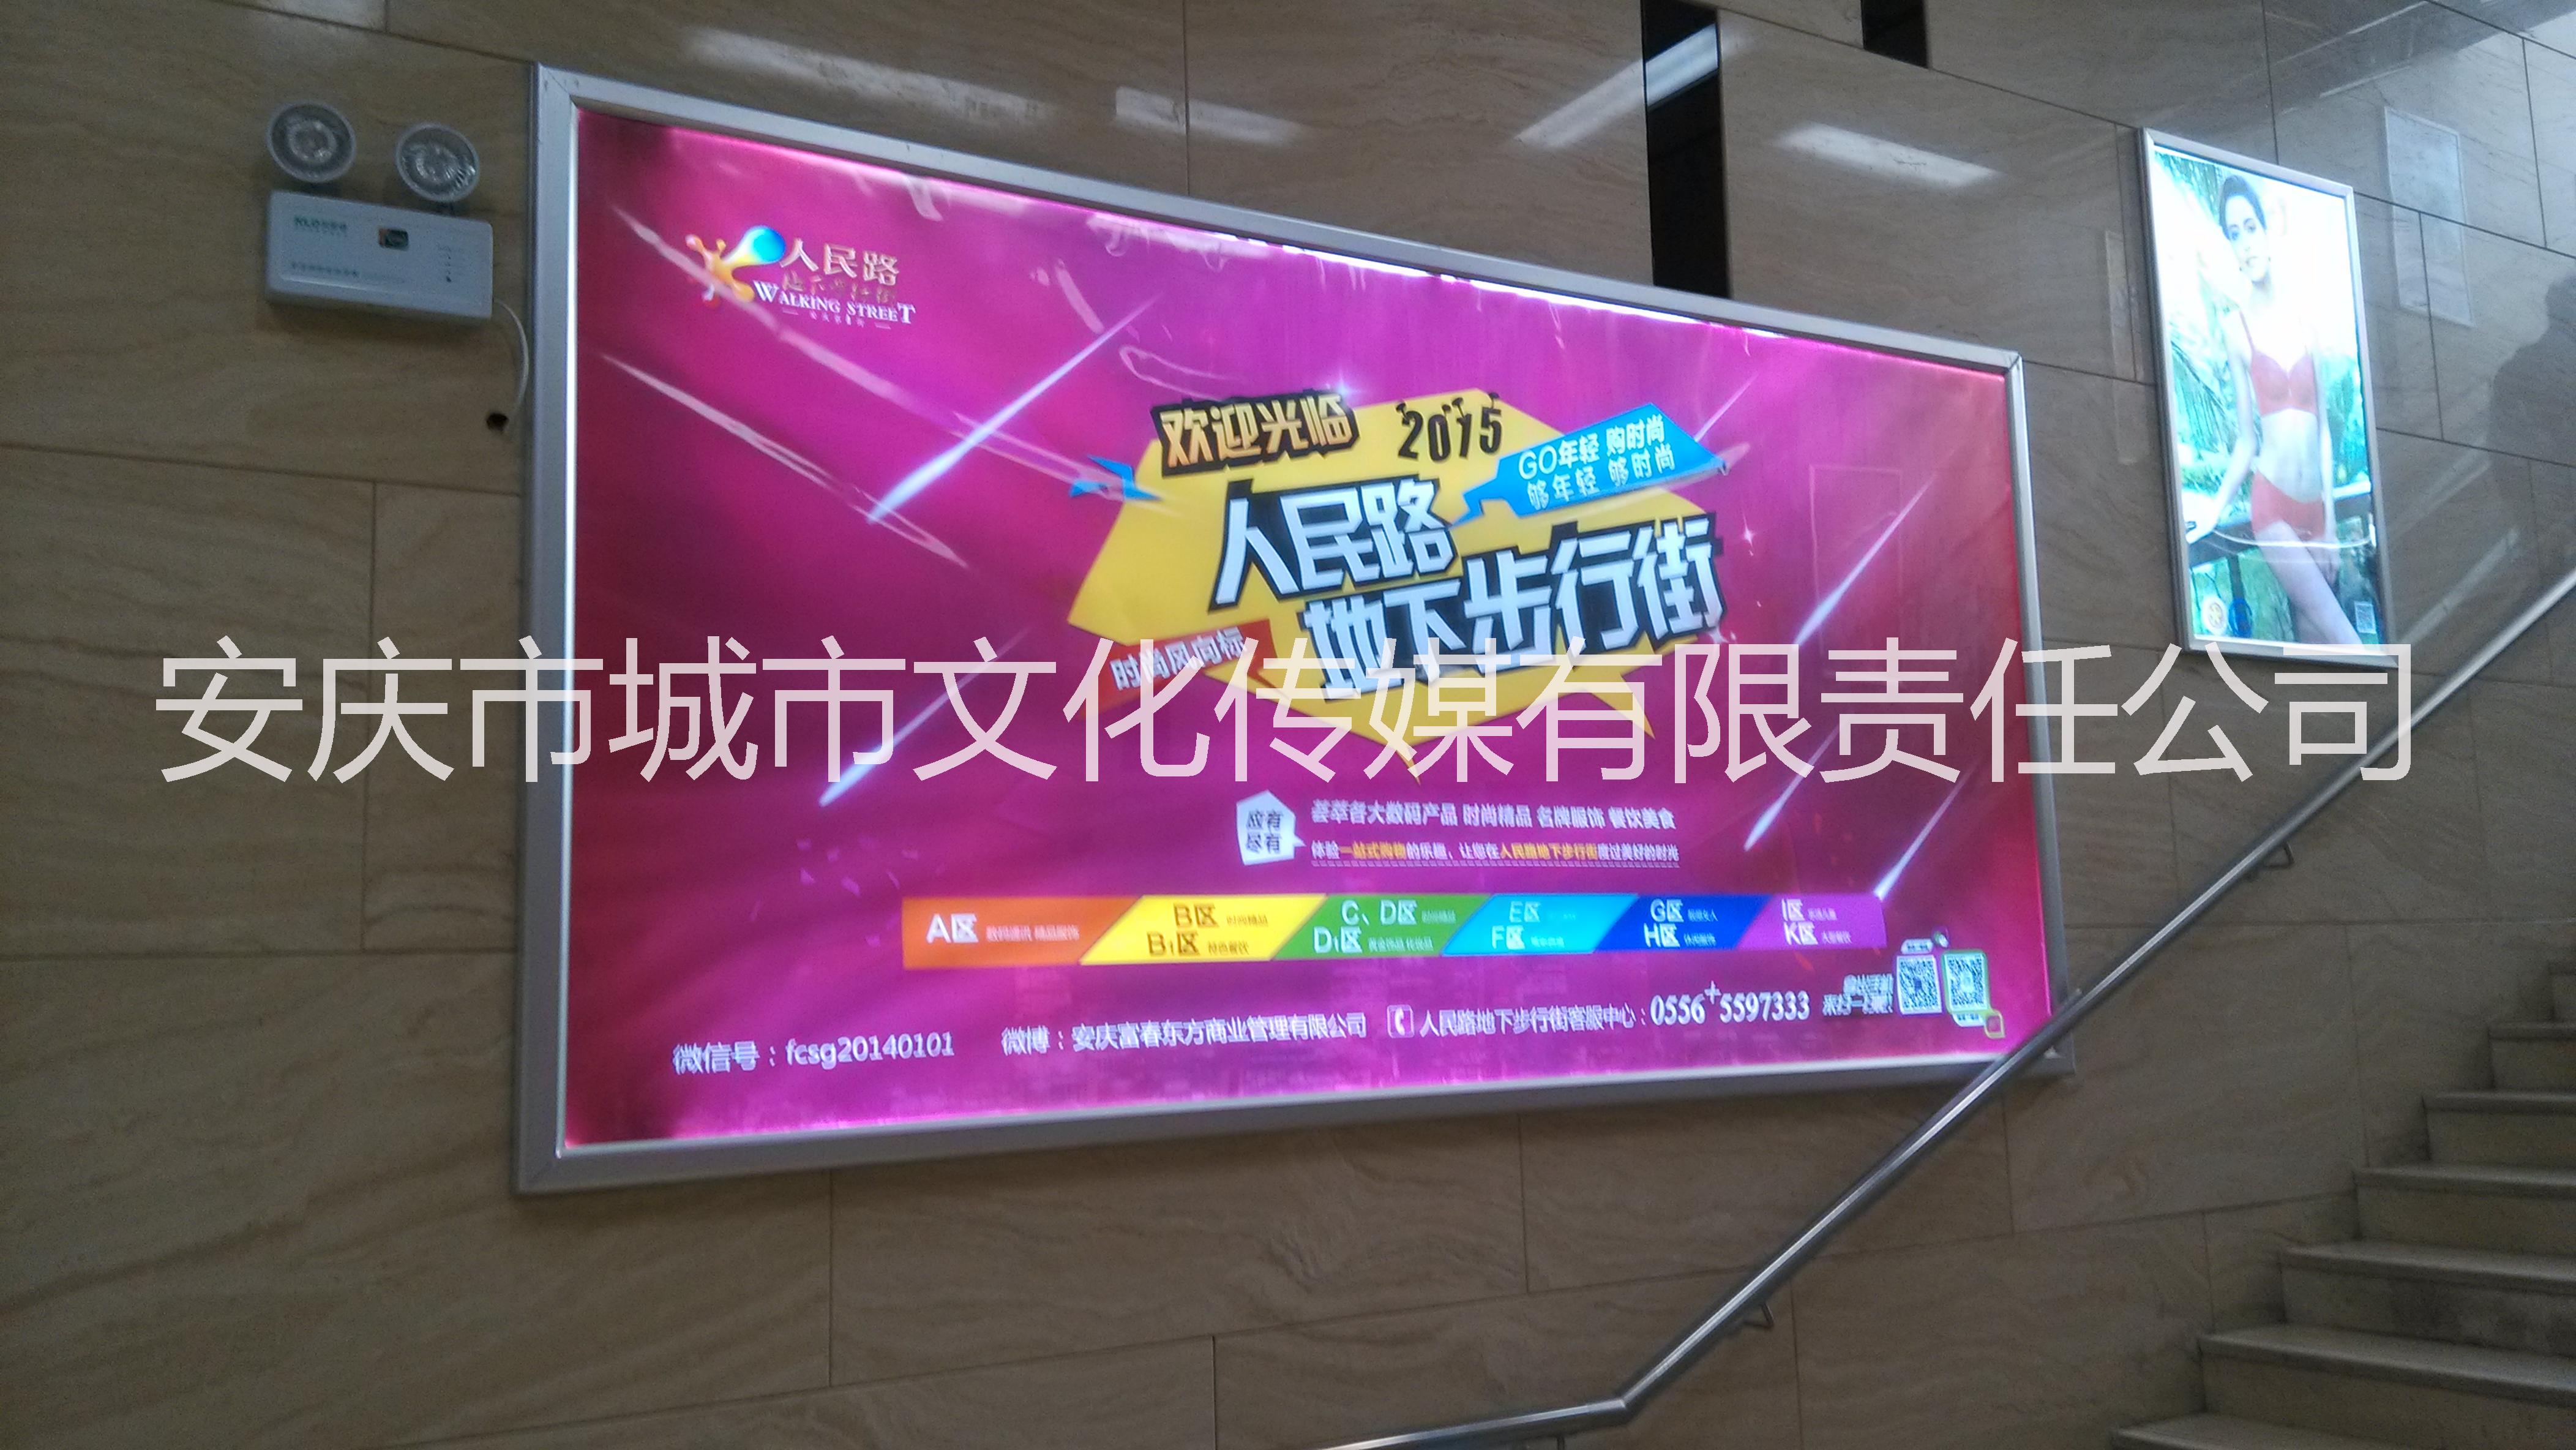 供应安庆市区人民路步行街广告媒体电视机广告与灯箱片媒体图片